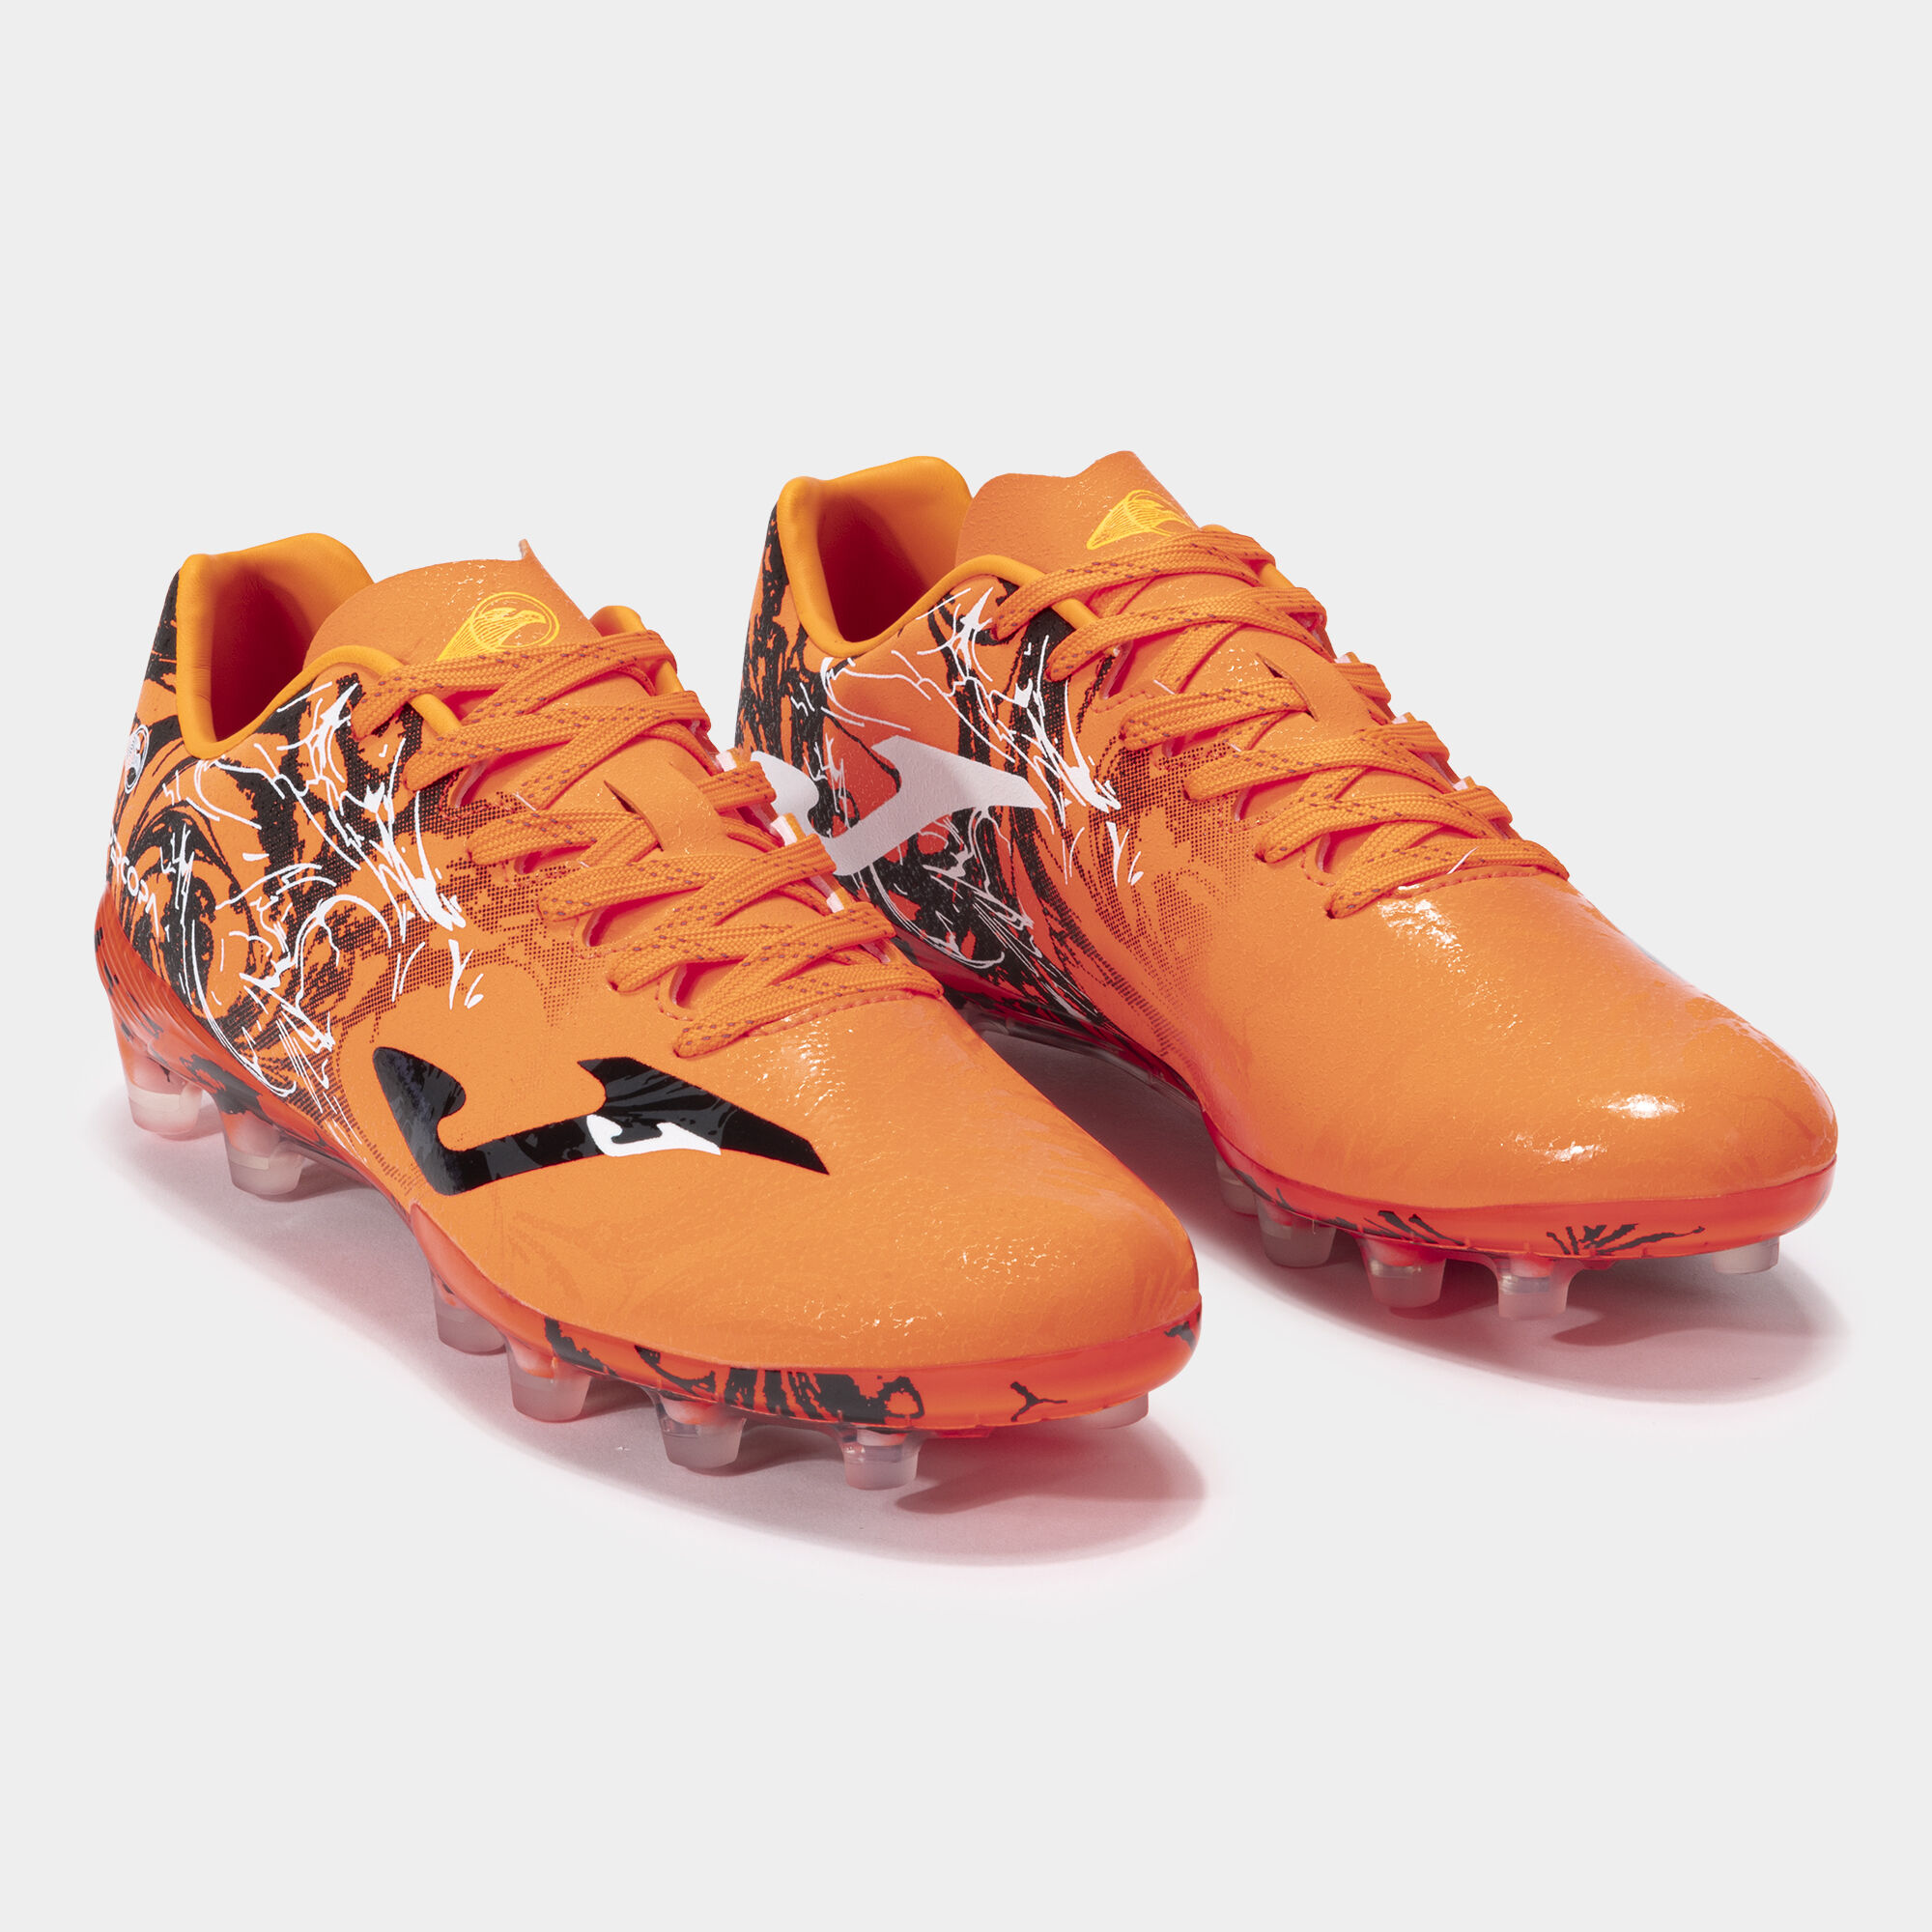 Chaussures football Super Copa 24 terrain ferme FG orange noir